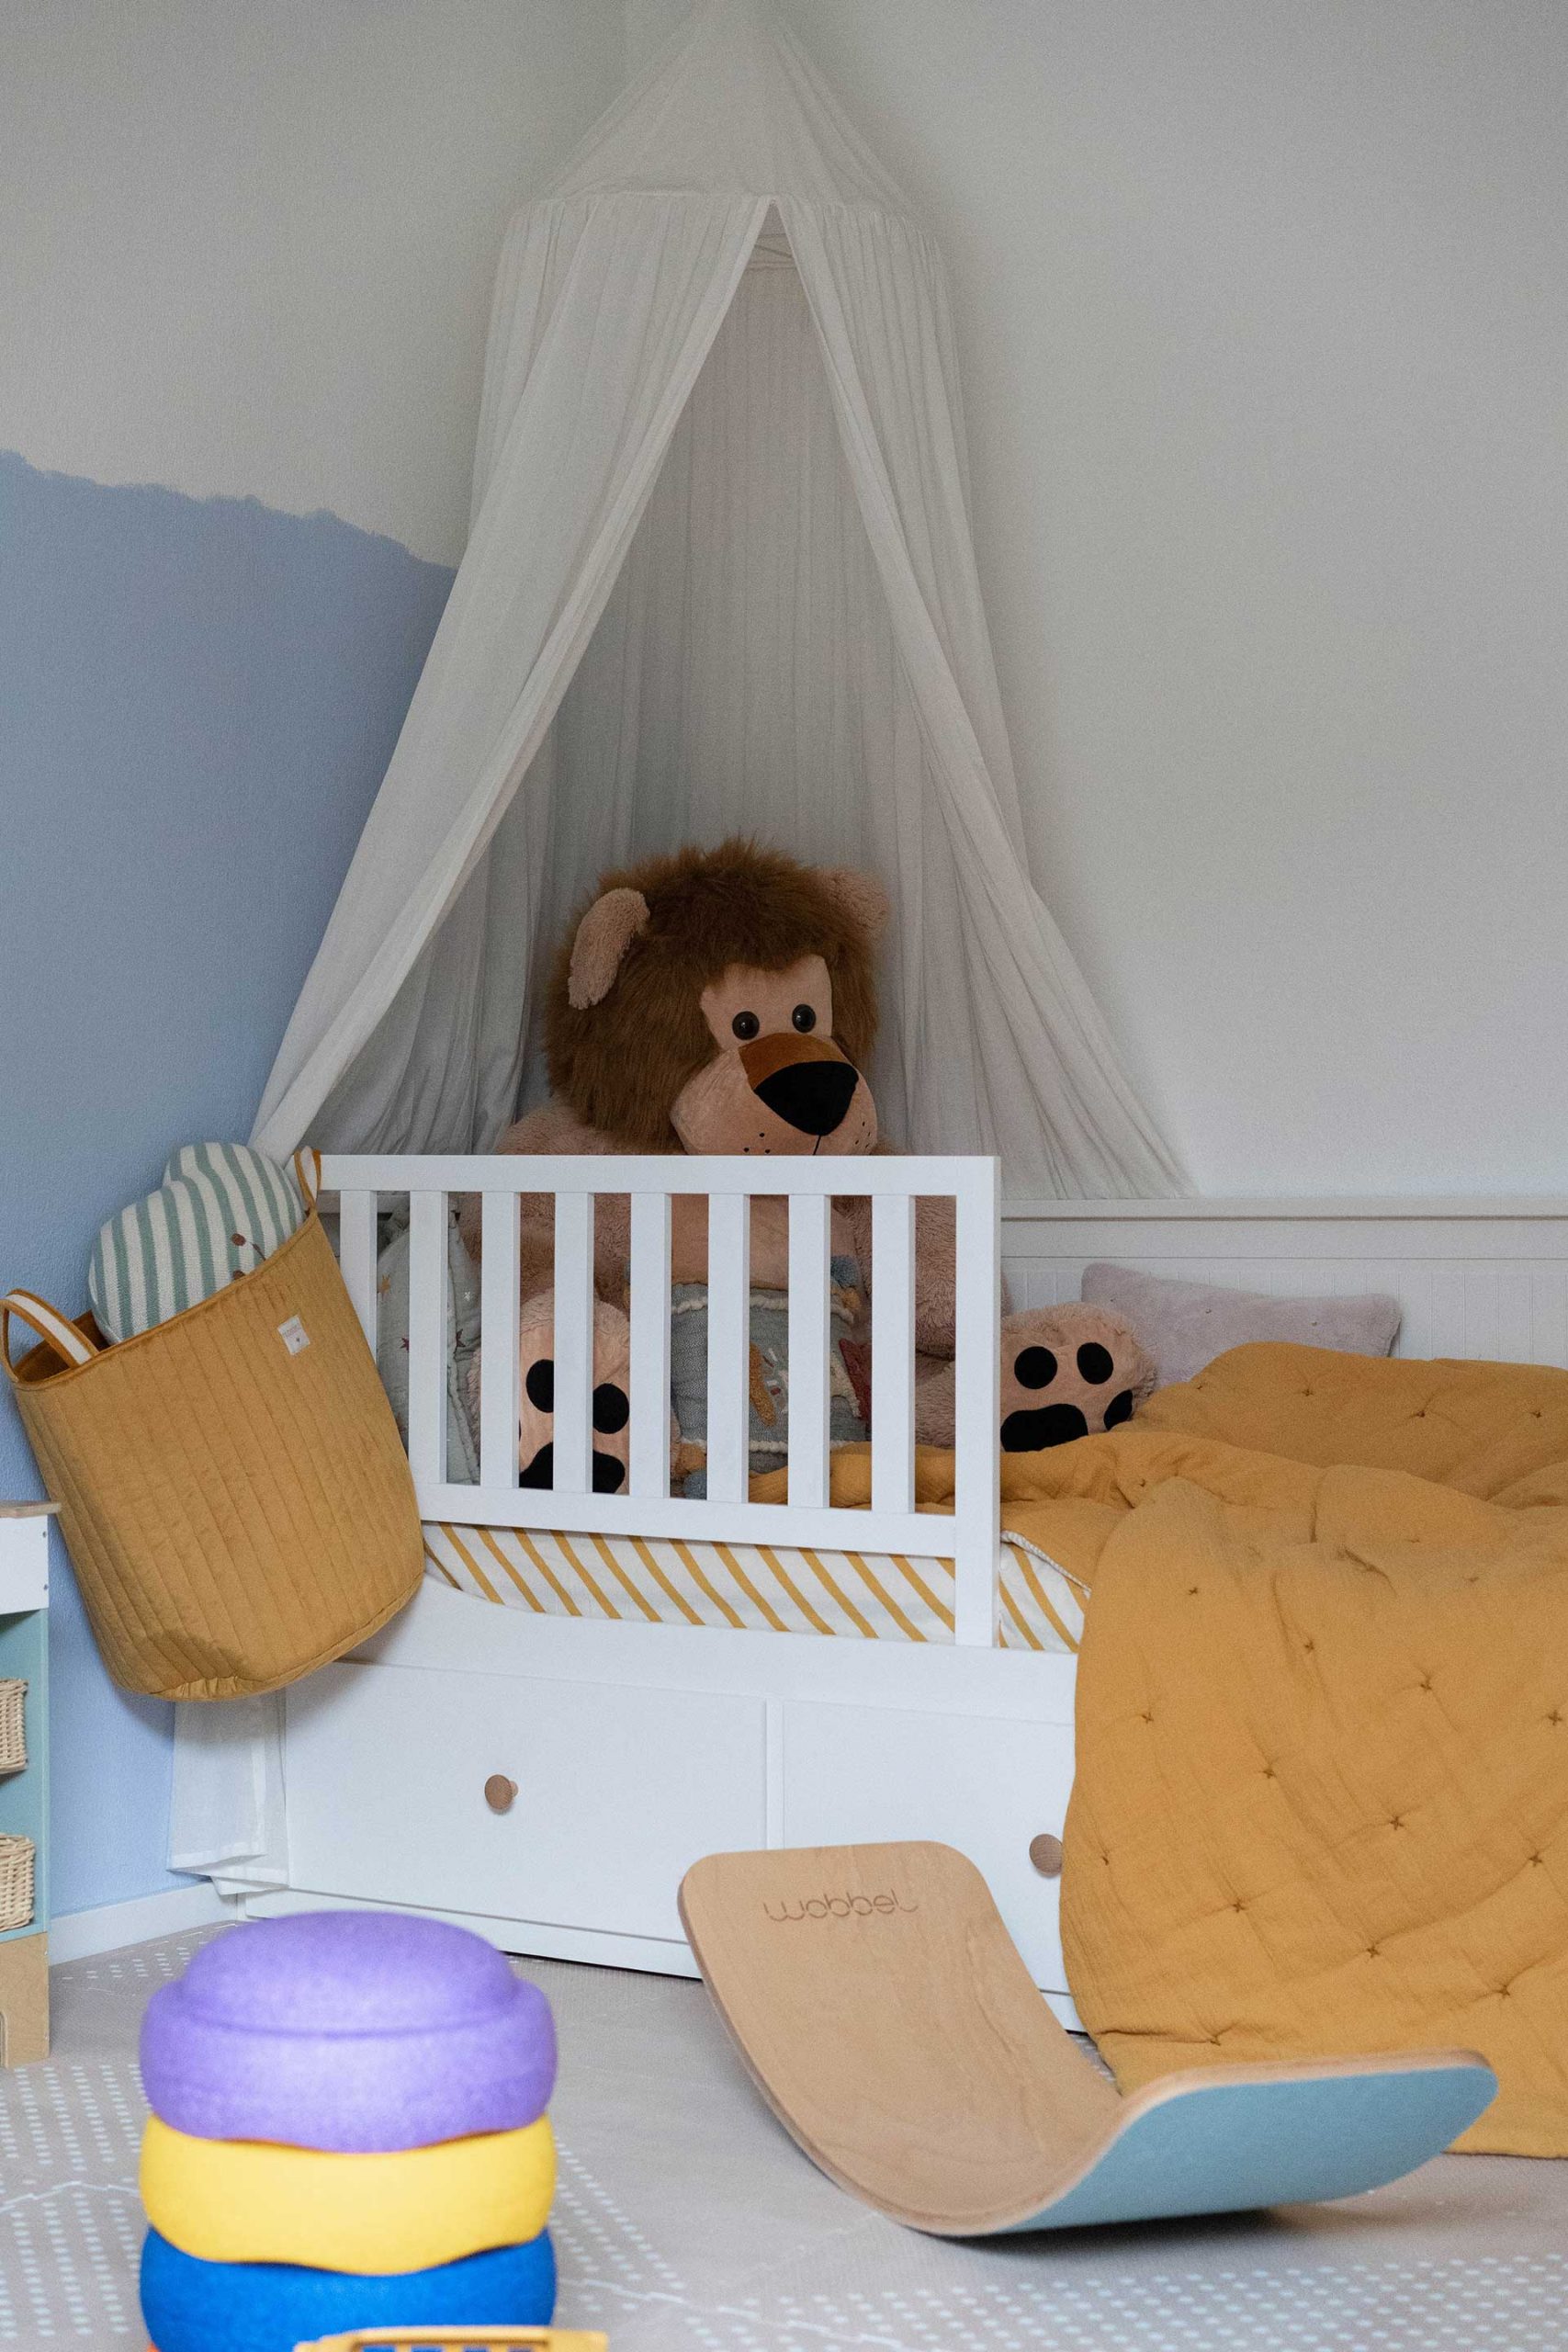 Du möchtest ein schönes Kinderzimmer einrichten? Meine Tipps für Kleinkinder (1-2 Jahre) findest du jetzt am Mamablog www.whoismocca.com